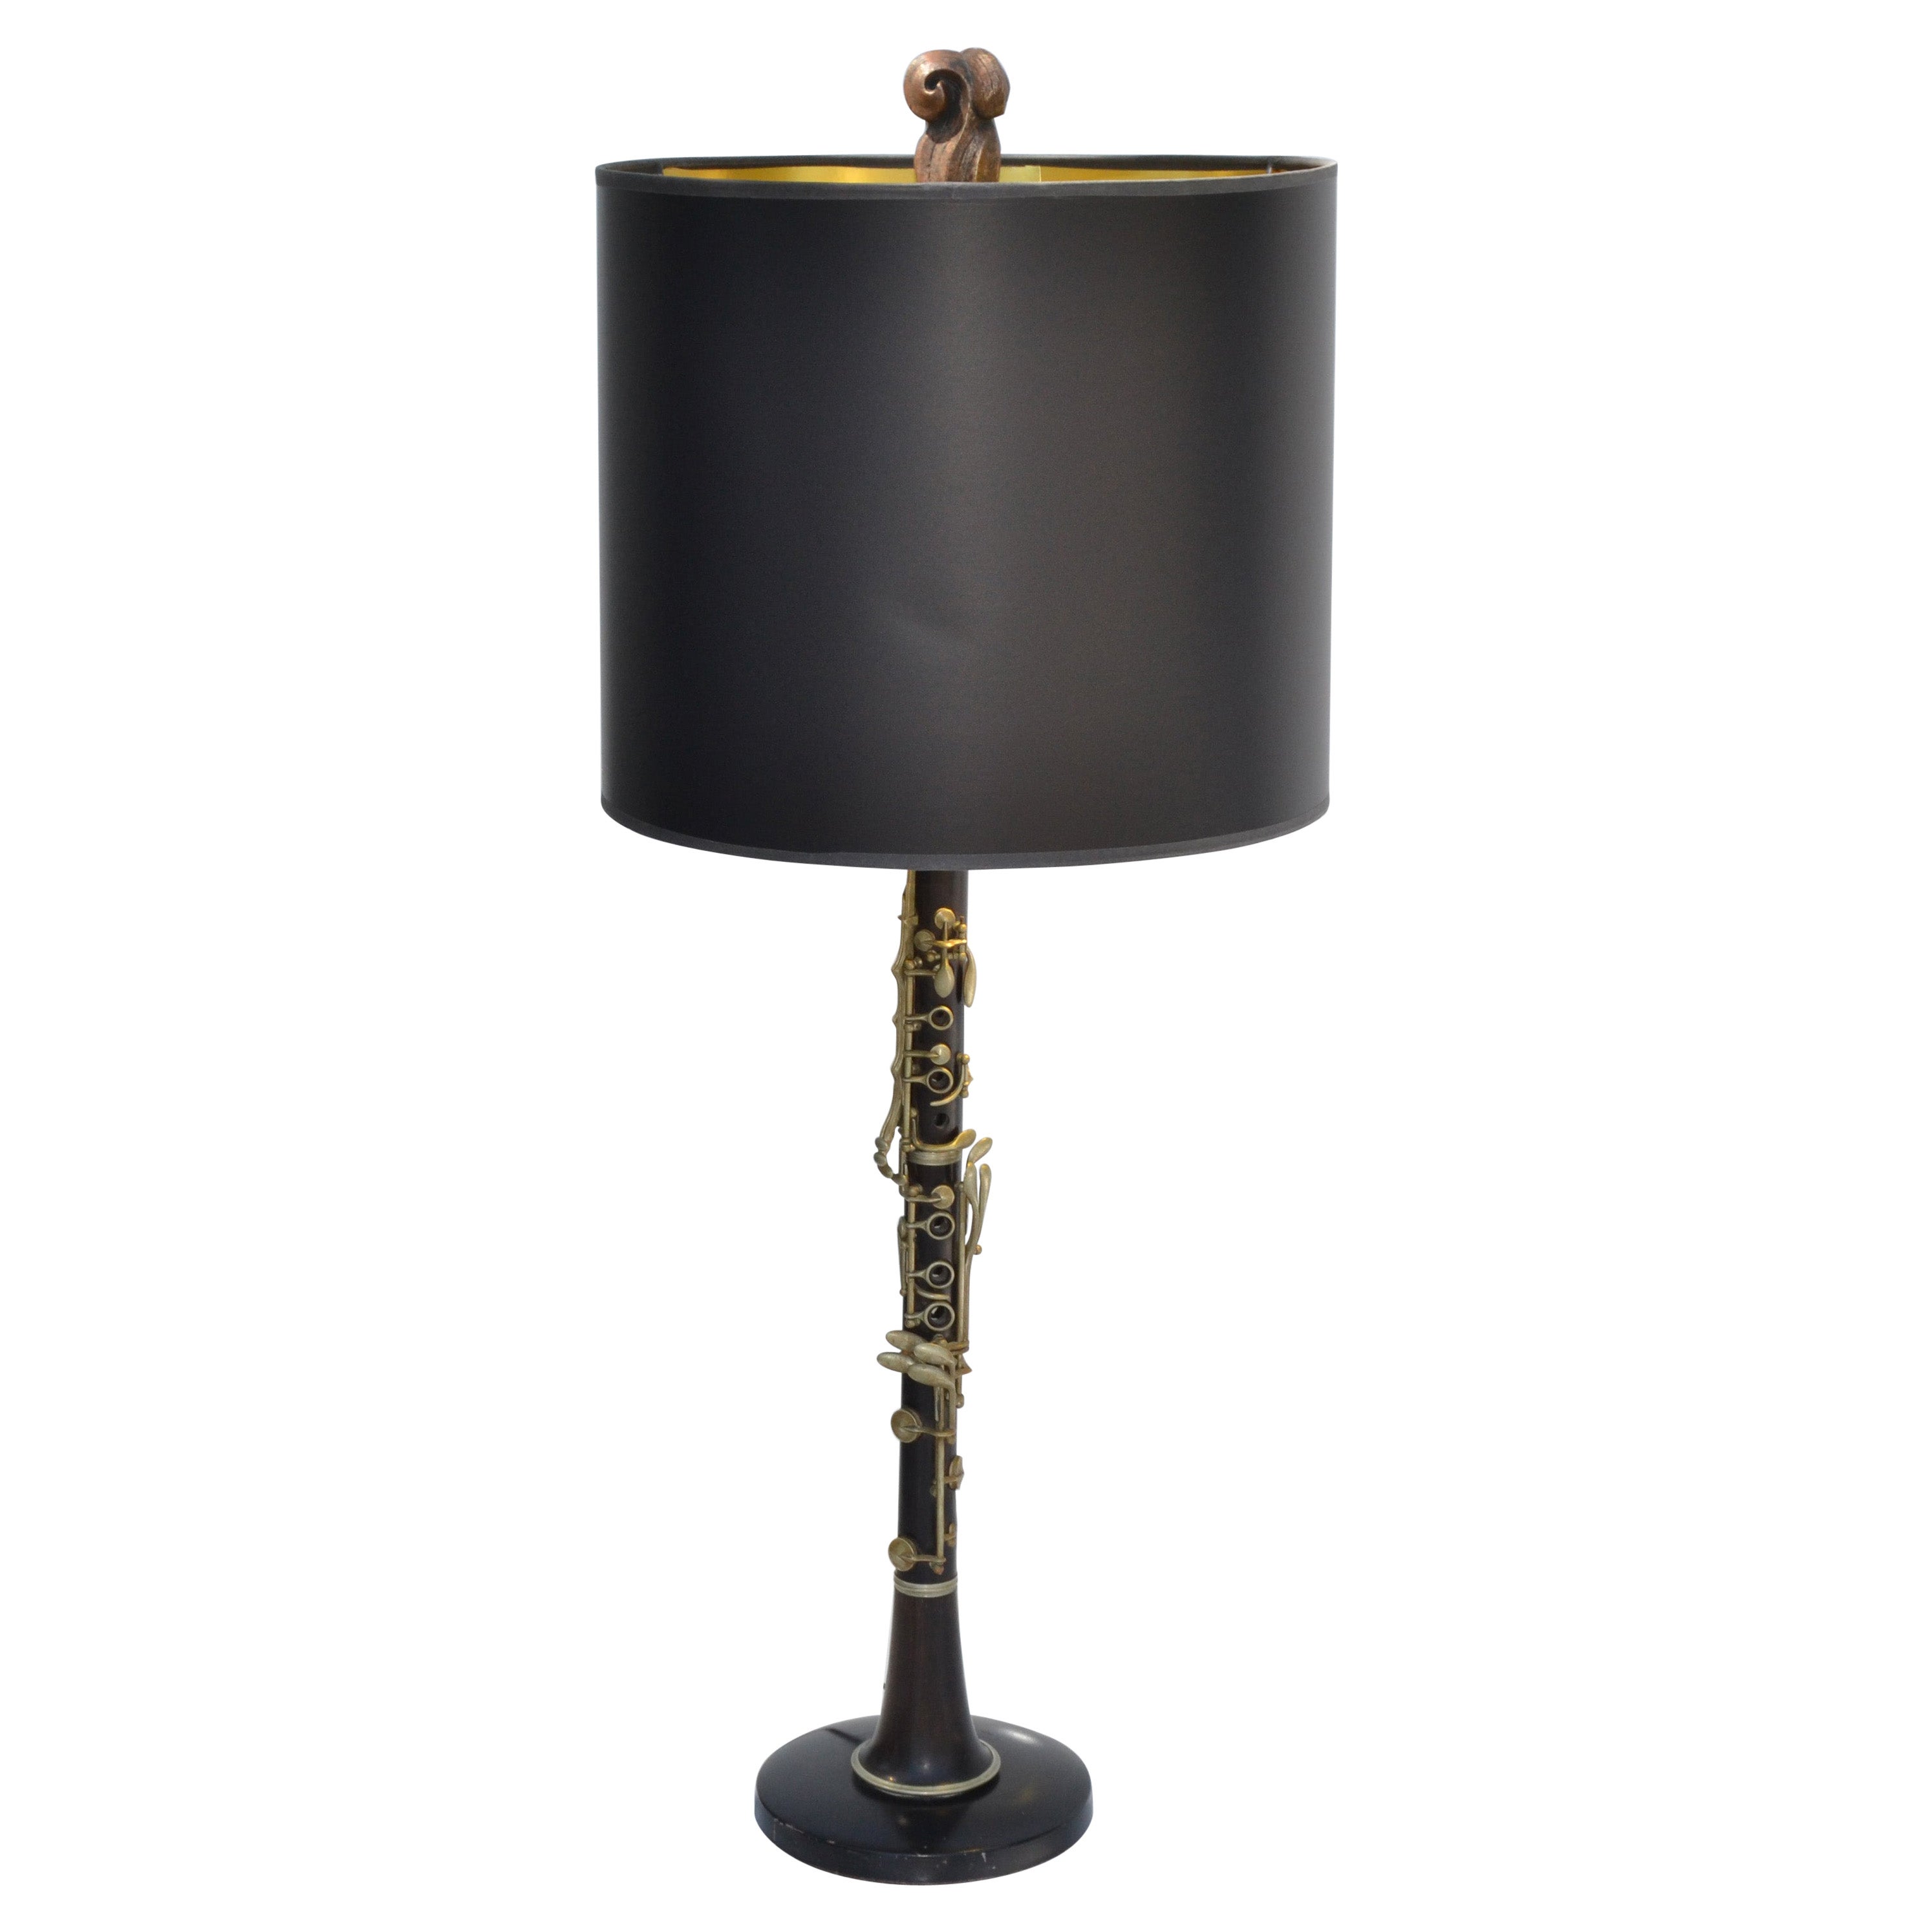 Neoklassizistische Tischlampe aus Clarinetholz, Messing und Metall, schwarz-goldener Trommelschirm